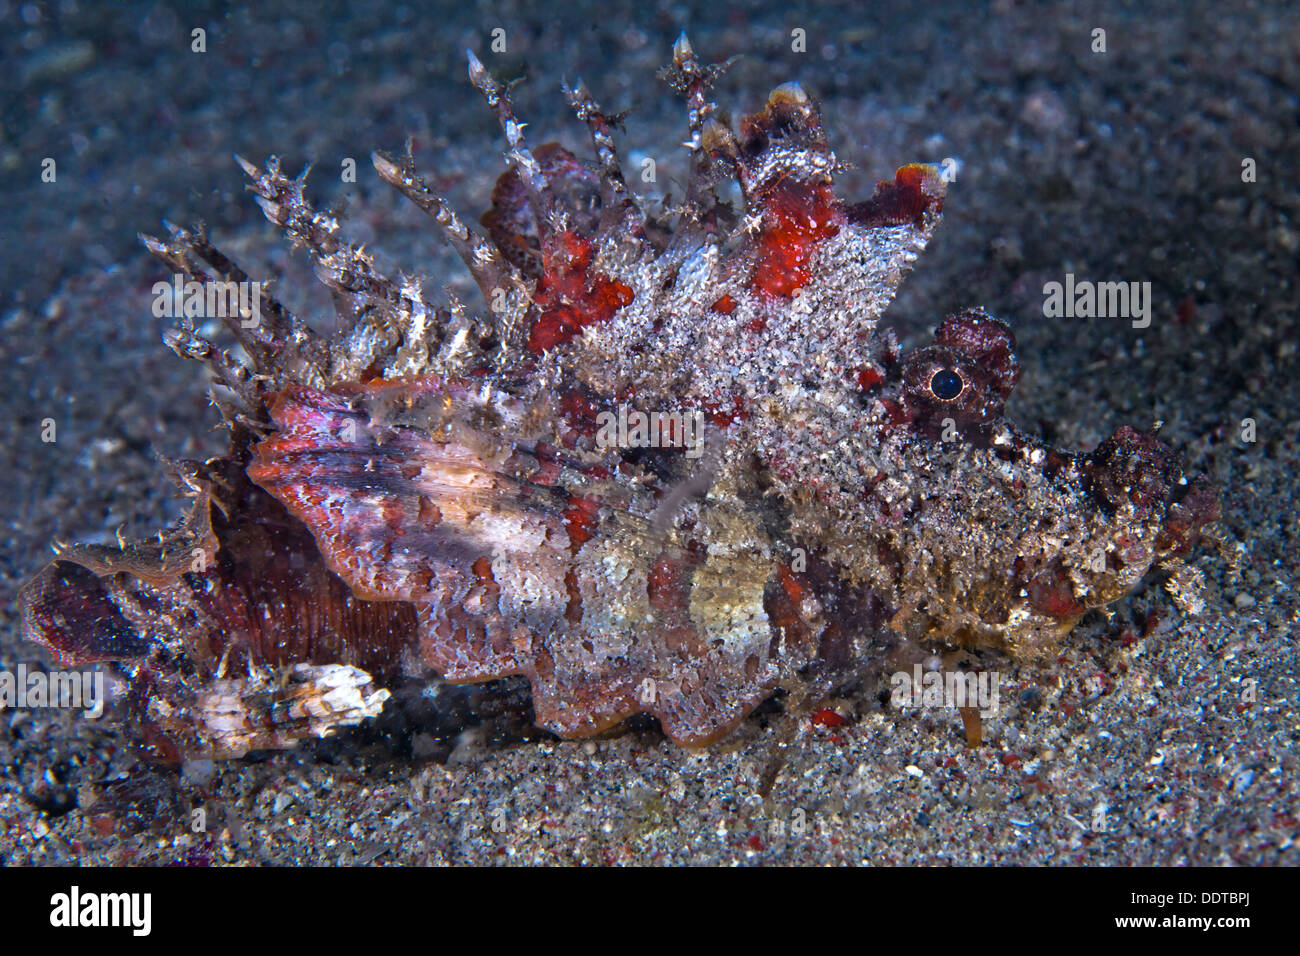 Teufel Drachenköpfe, Inimicus Didactylus, am Meeresgrund von Puerto Galera, Philippinen. Stockfoto